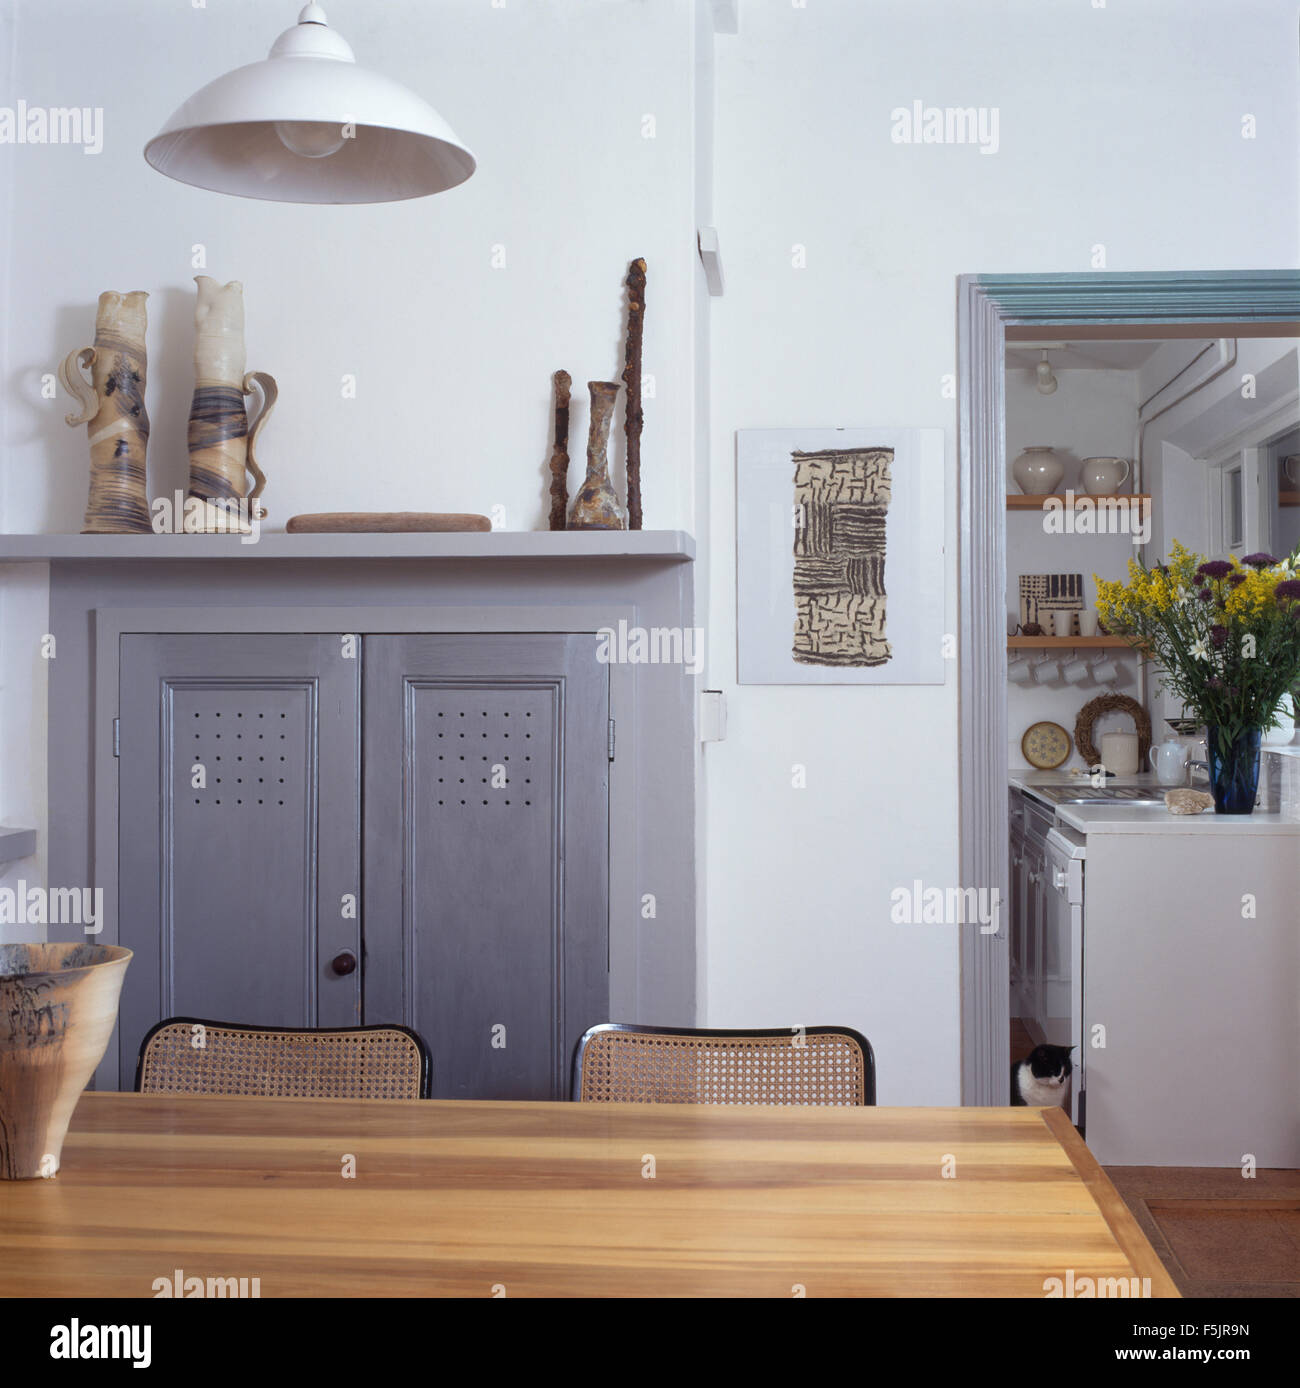 Portes en bois gris sur meuble dans une cheminée dans une salle blanche avec porte de cuisine Banque D'Images